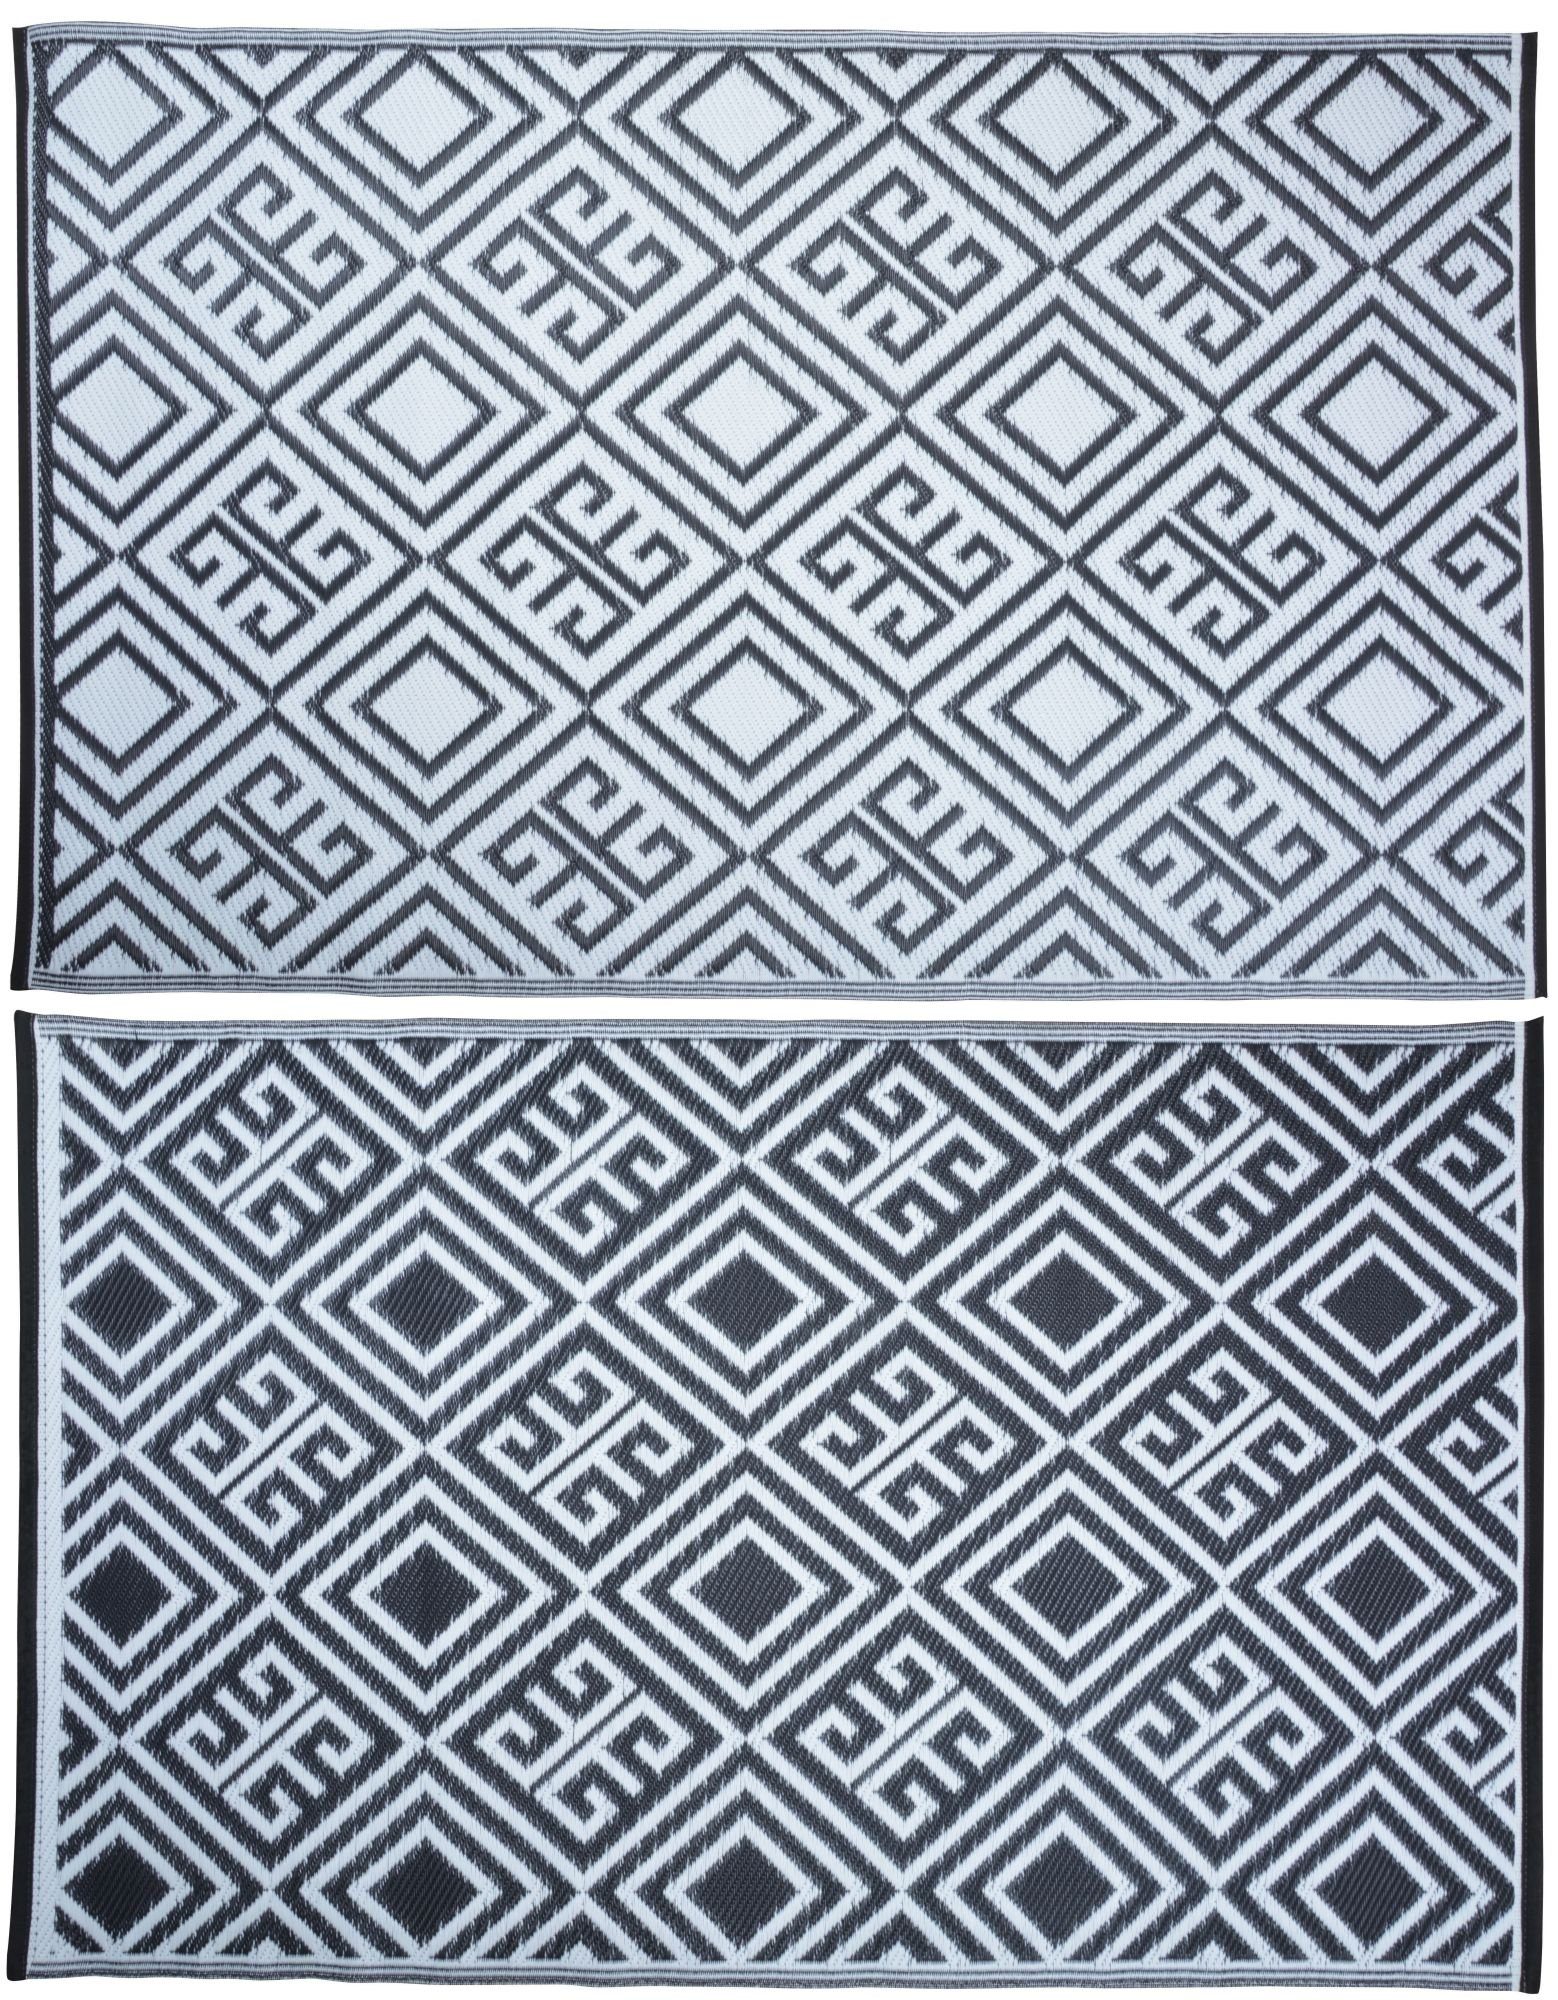 Outdoorteppich, esschert design, Gartenteppich, mit Quadraten aus Kunststoff, Maße 119.5 x 186 x 0.3 cm